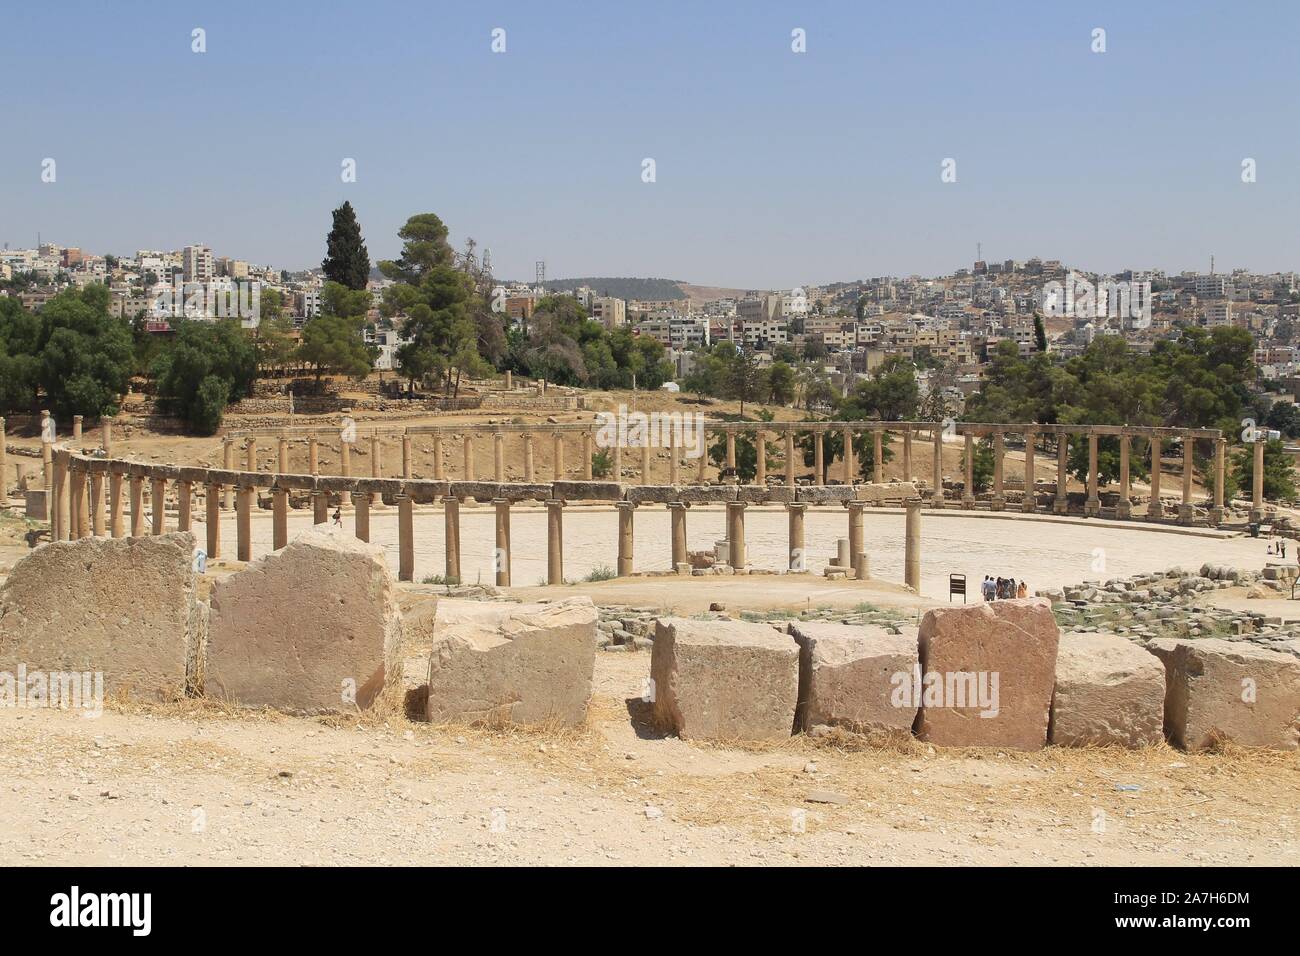 JORDANIA. JERASH AMMAN. Jerash , es el sitio de las ruinas de la ciudad grecorromana de Gerasa, también conocida como Antioquía en el Río Dorado. Jerash es considerada una de las ciudades romanas más importantes y mejor conservadas del Cercano Oriente. Era una ciudad de la Decápolis.. PLAZA OVAL. SU FUNCIO0N POSIBLEMENTE FUERA LA DE MERCADO. TIENE 56 COLUMNAS Y ESTA PERFECTAMENTE PAVIMENTADO. Stock Photo